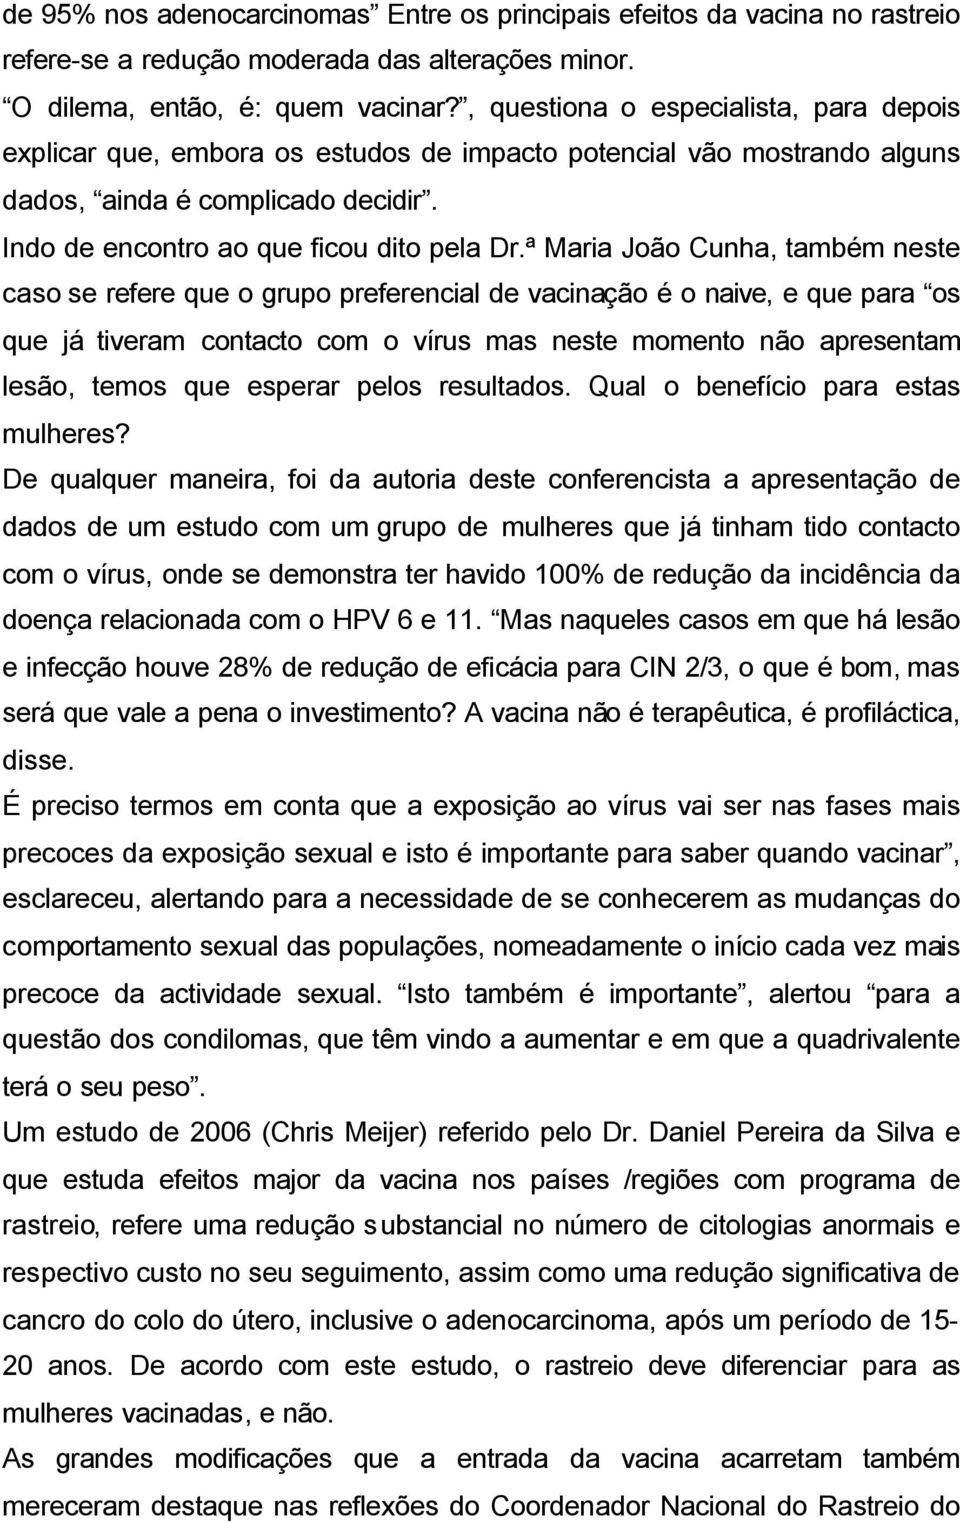 ª Maria João Cunha, também neste caso se refere que o grupo preferencial de vacinação é o naive, e que para os que já tiveram contacto com o vírus mas neste momento não apresentam lesão, temos que